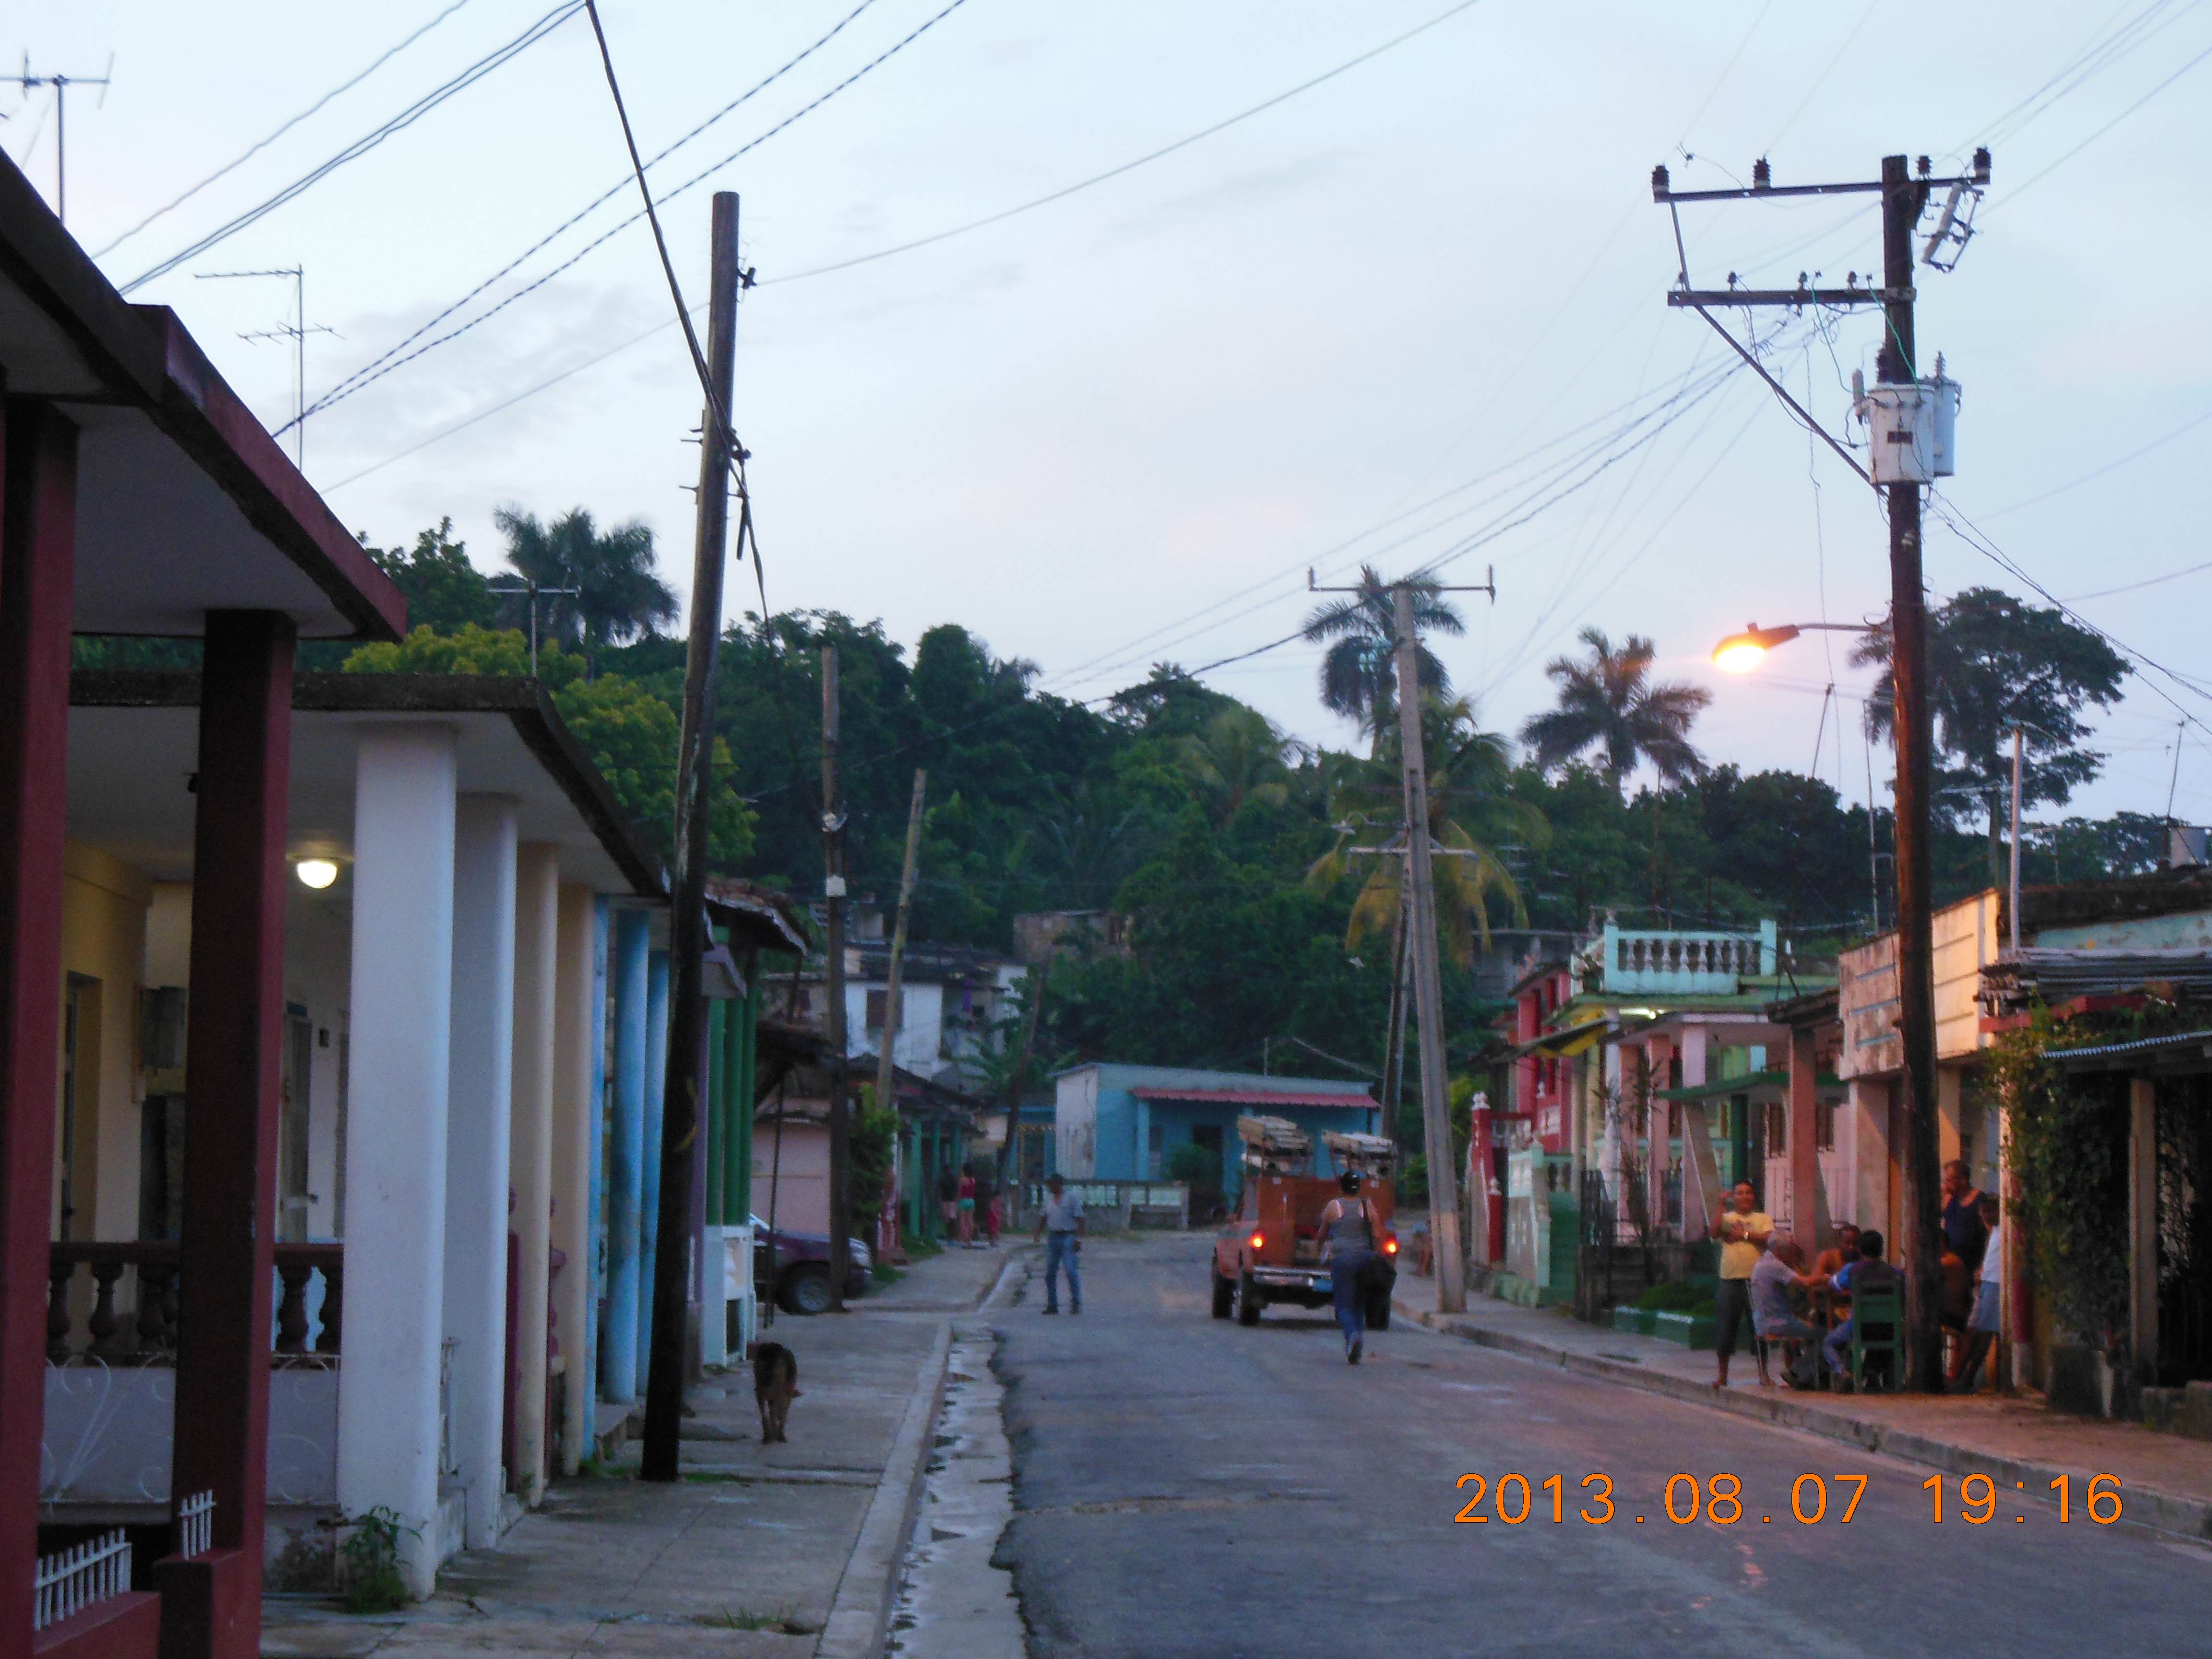 Streetside Cuba